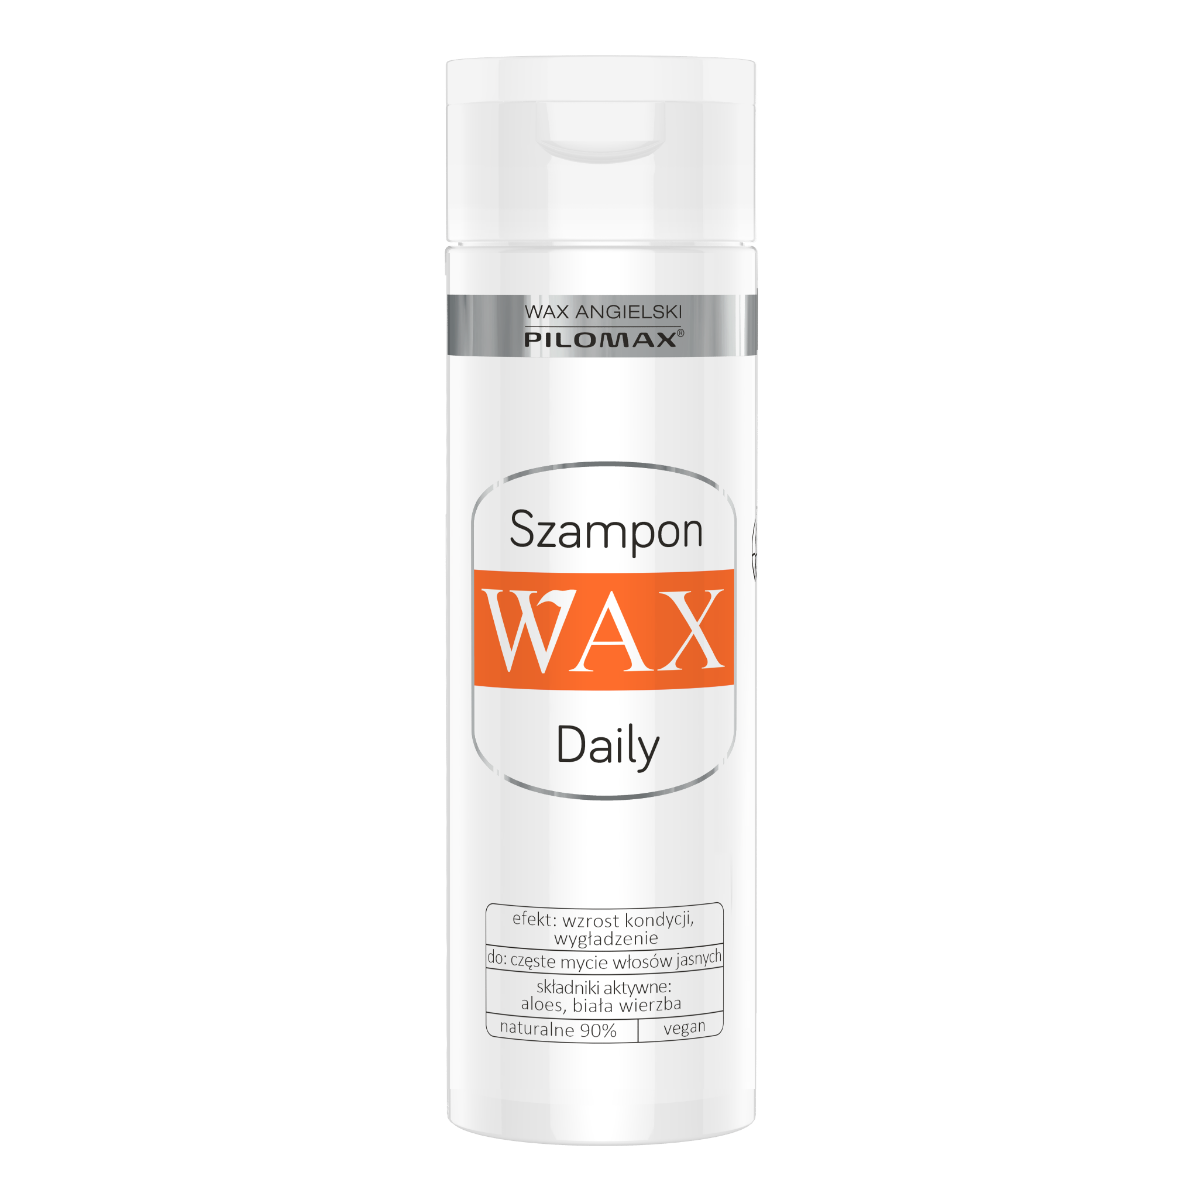 pilomax wax daily szampon z pantenolem do włosów ciemnych 200ml